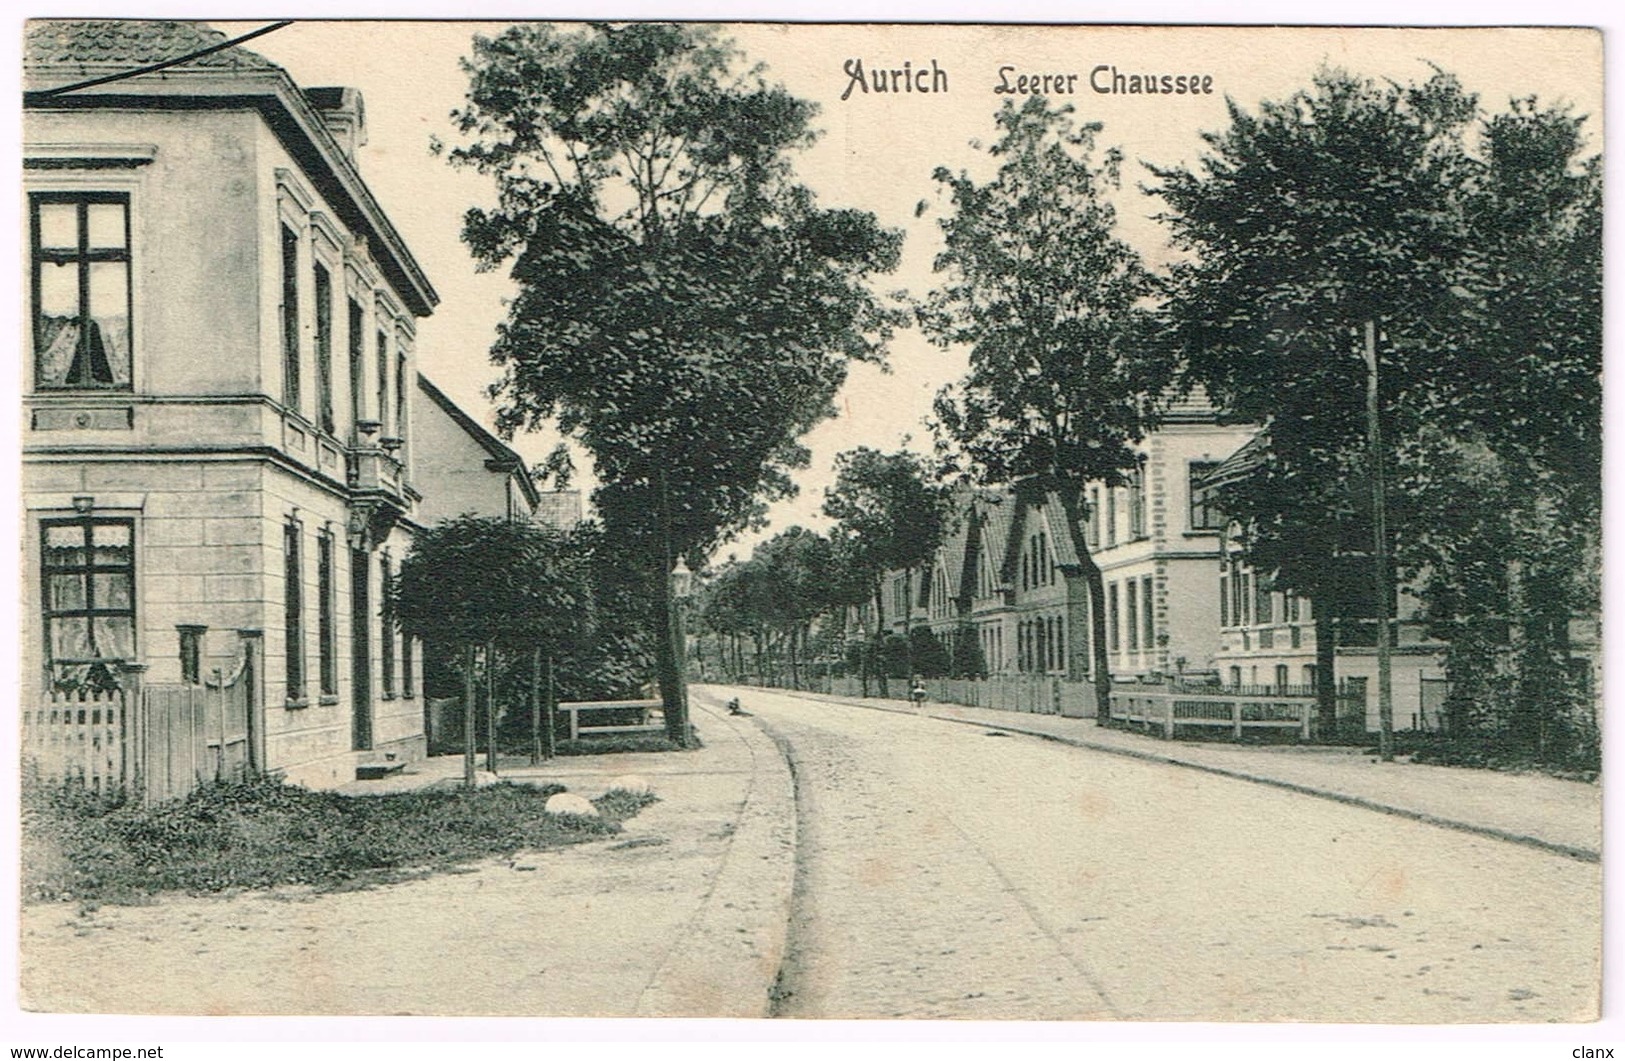 AURICH 1910 Leerer Chaussee - Aurich